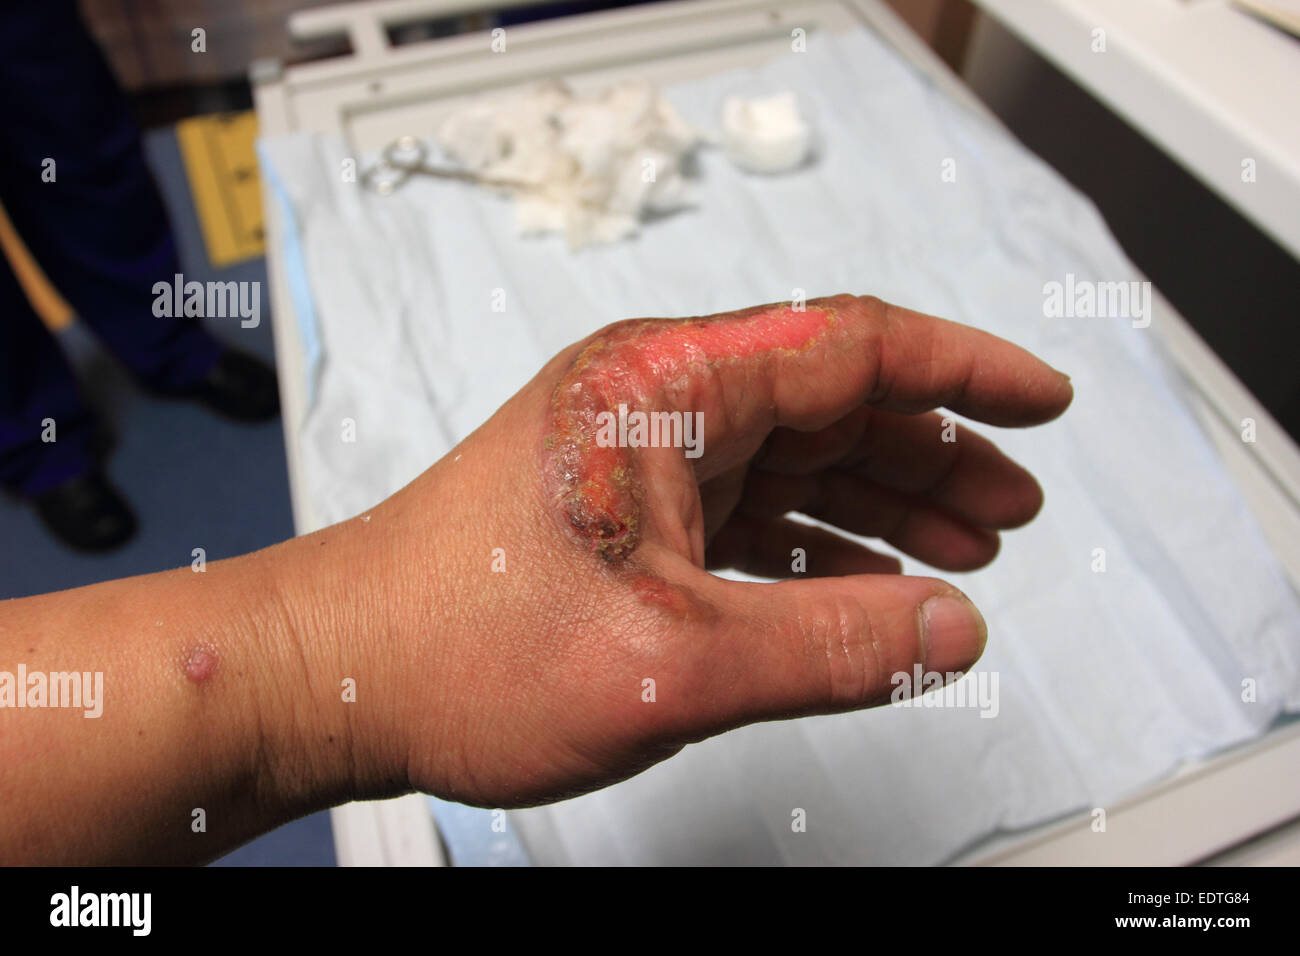 Maschio lato sinistro ha incidente, ustione di secondo grado, guarigione della ferita sulla mano sinistra, Norfolk, Regno Unito Foto Stock